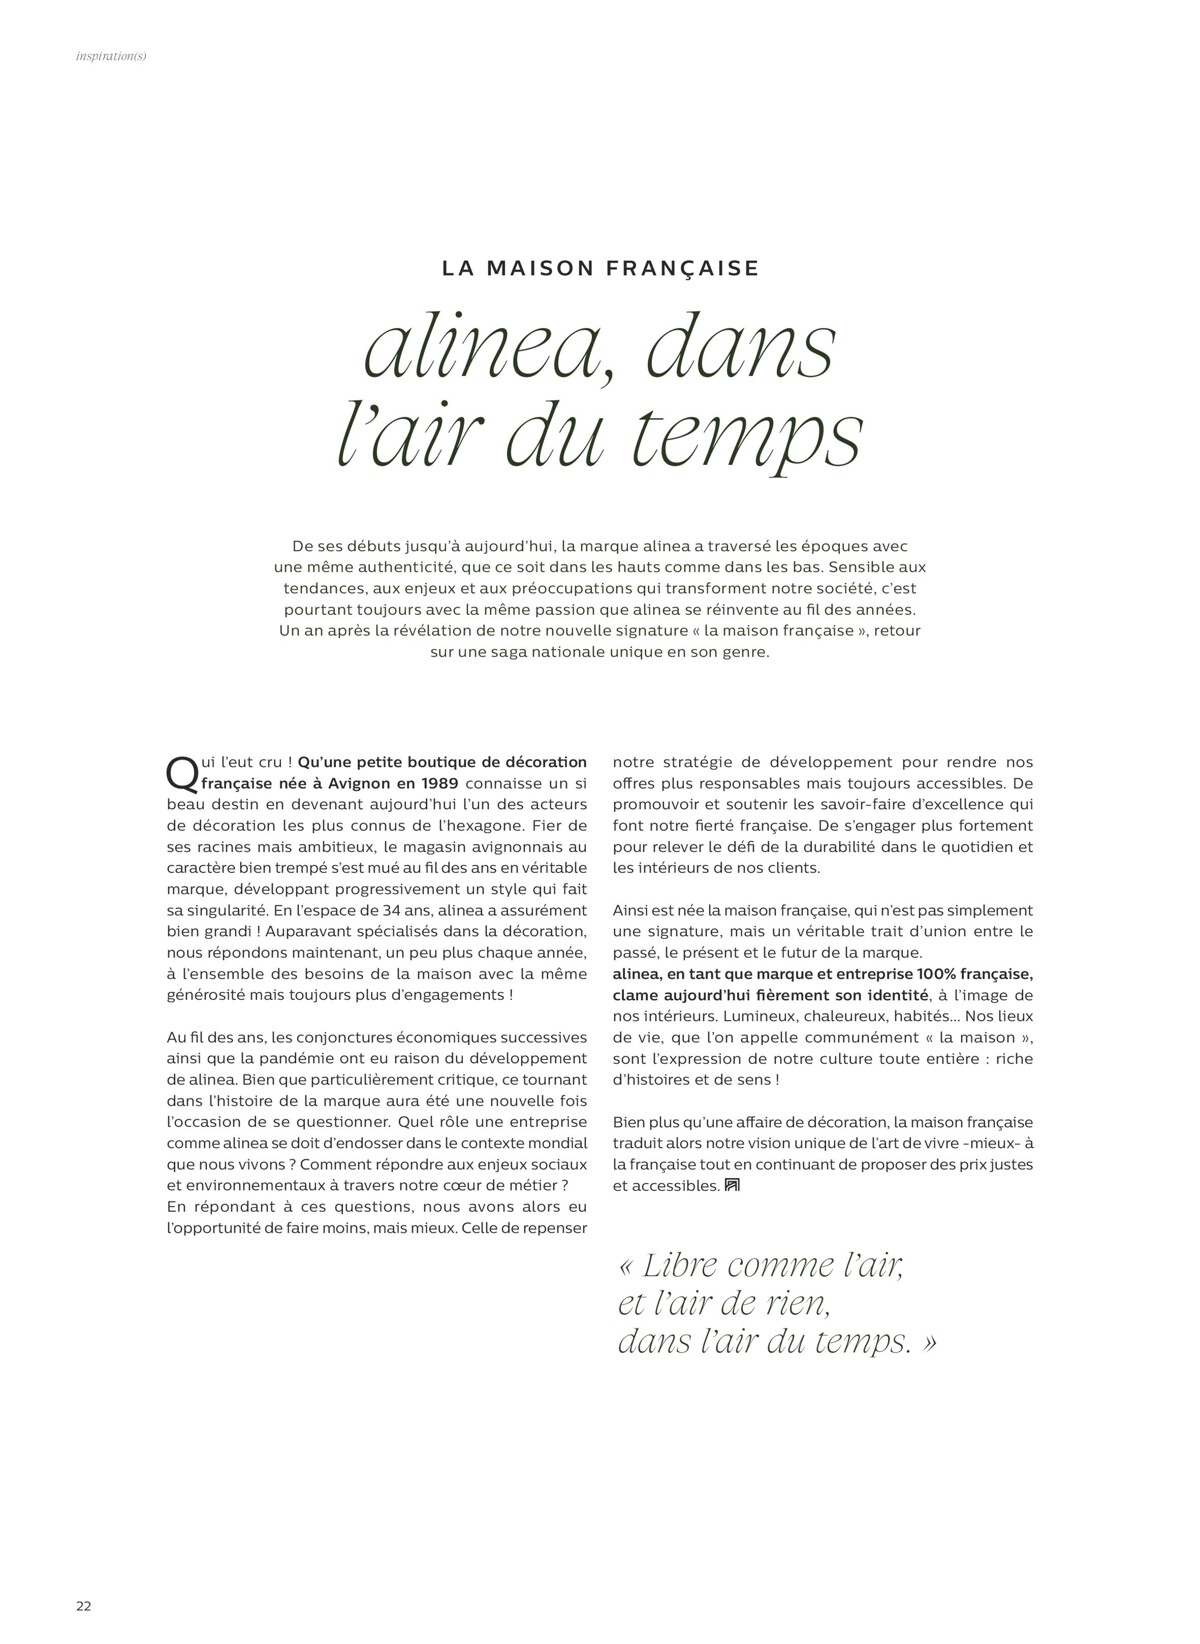 Catalogue Alinéa alinea, dans l'air du temps, page 00022